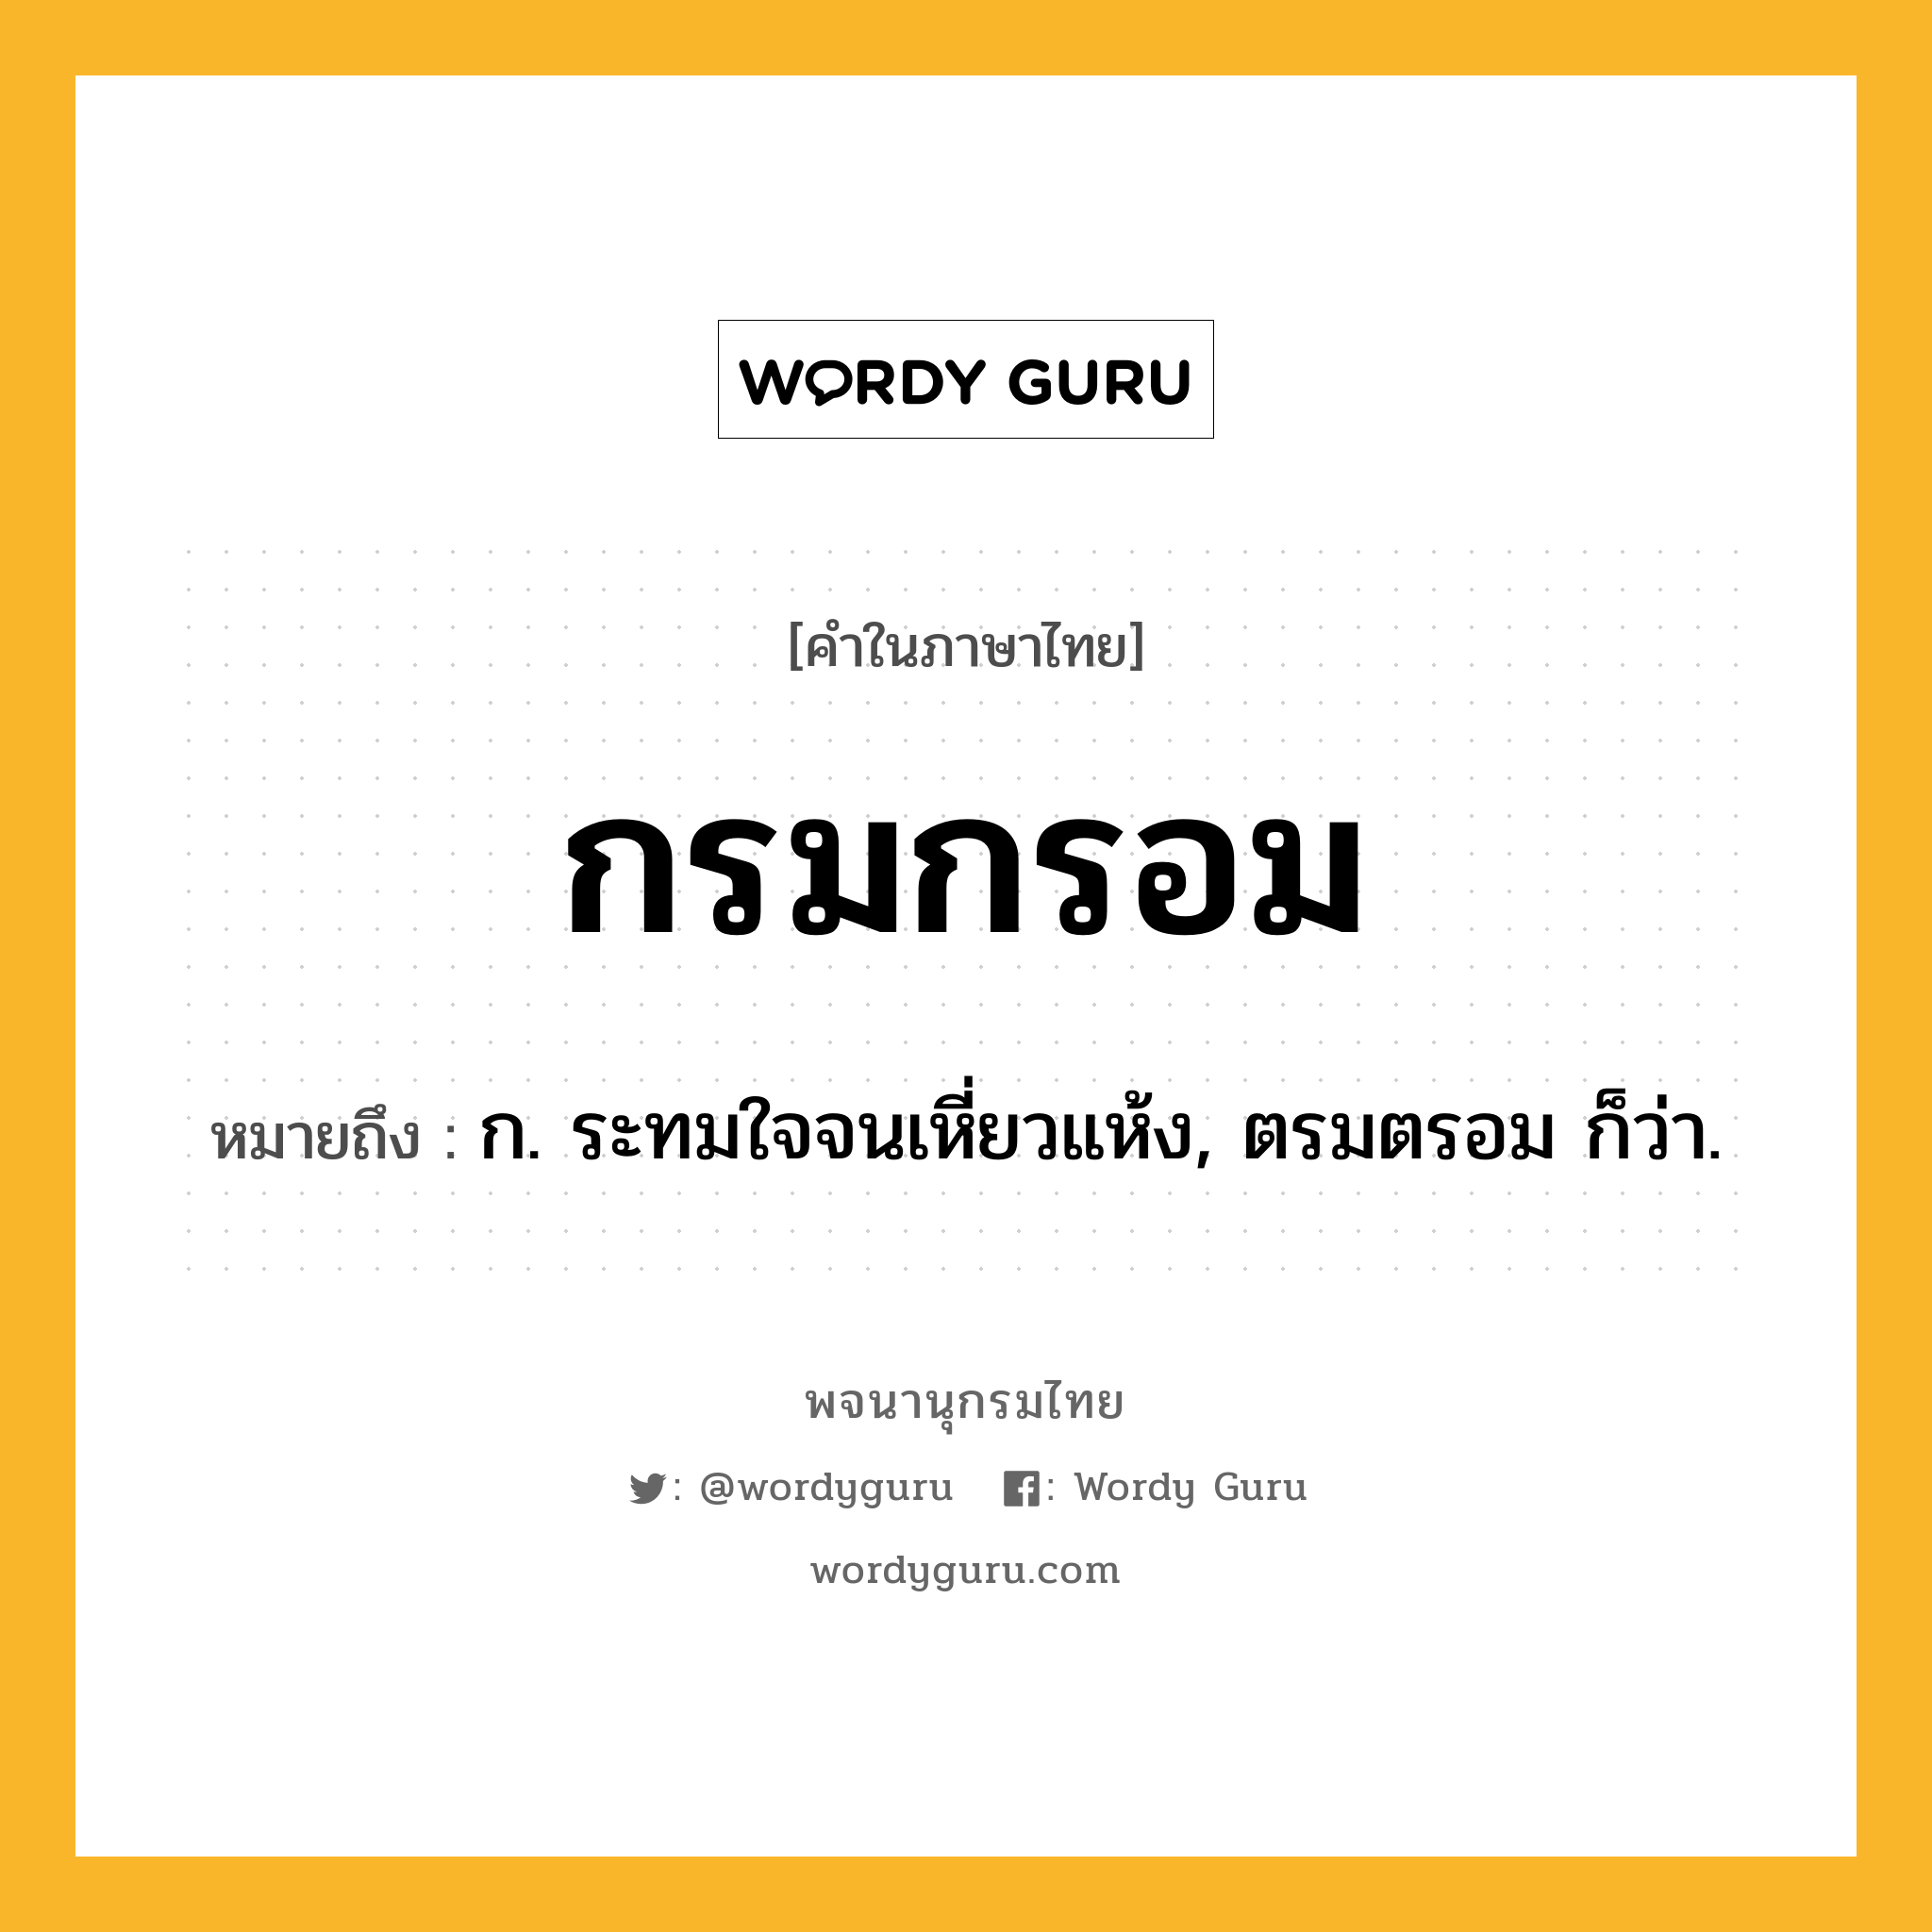 กรมกรอม ความหมาย หมายถึงอะไร?, คำในภาษาไทย กรมกรอม หมายถึง ก. ระทมใจจนเหี่ยวแห้ง, ตรมตรอม ก็ว่า.